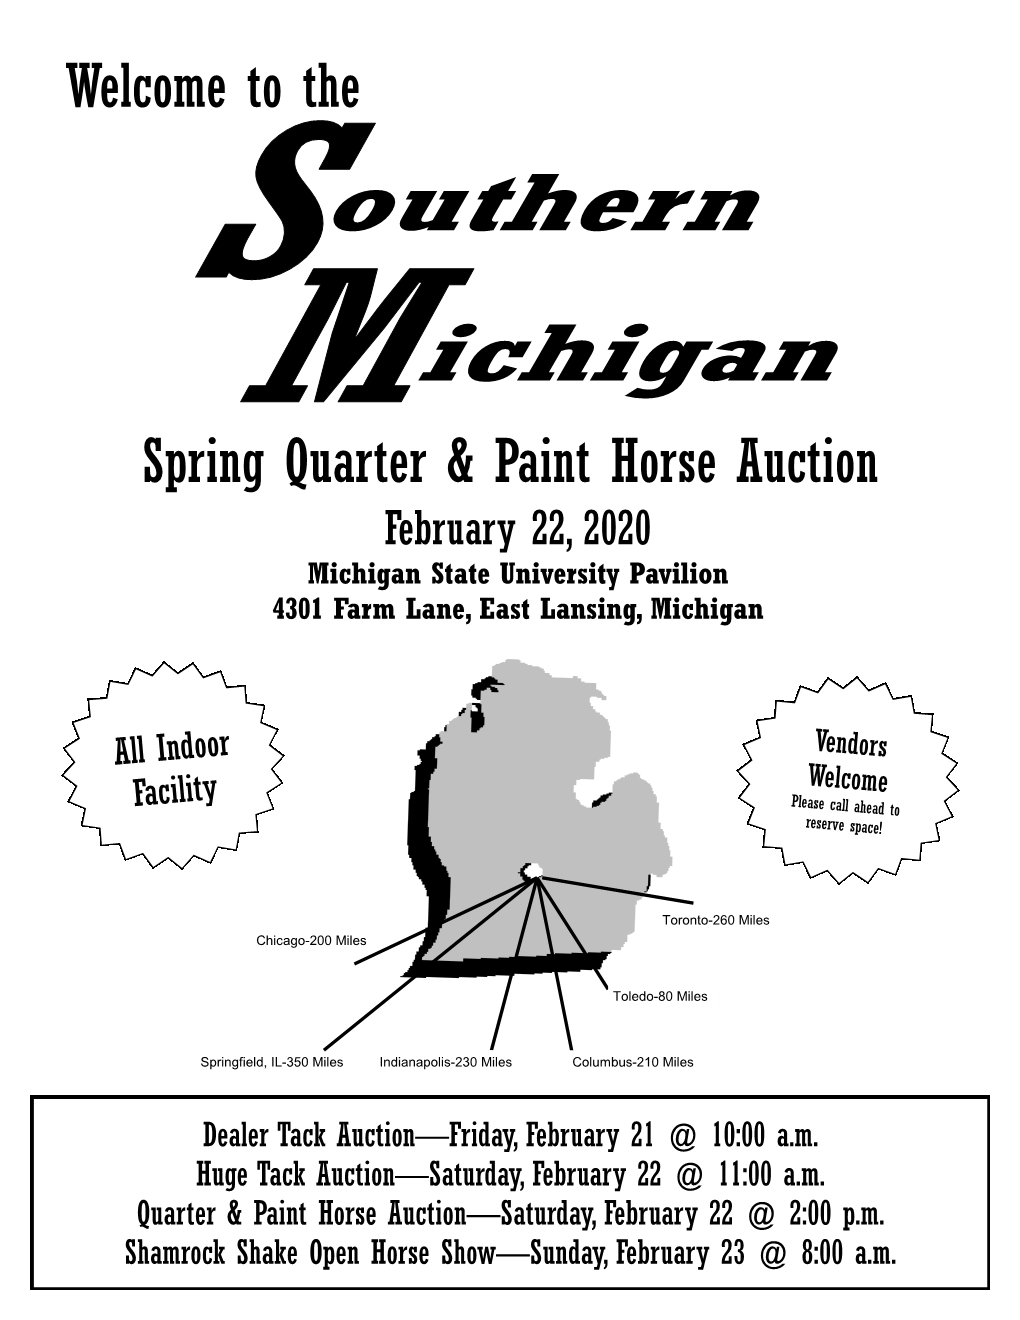 The Spring Quarter & Paint Horse Auction